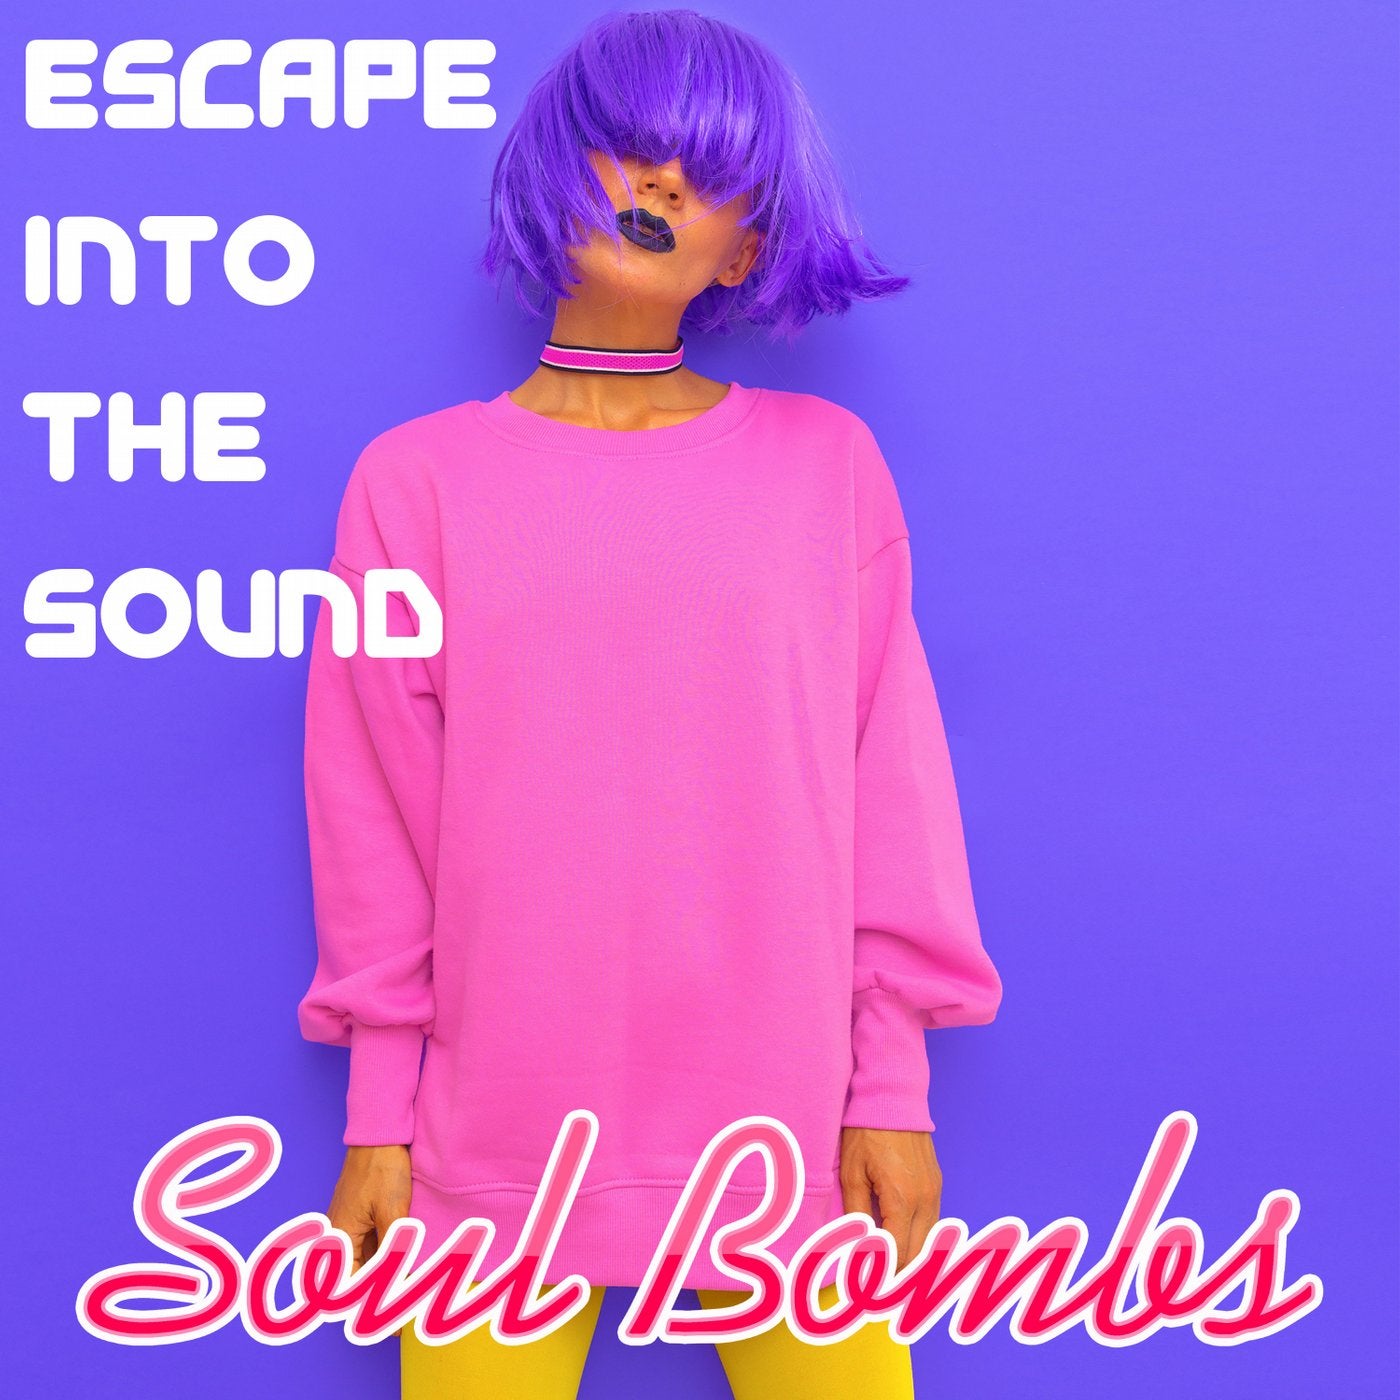 Escape Into The Sound